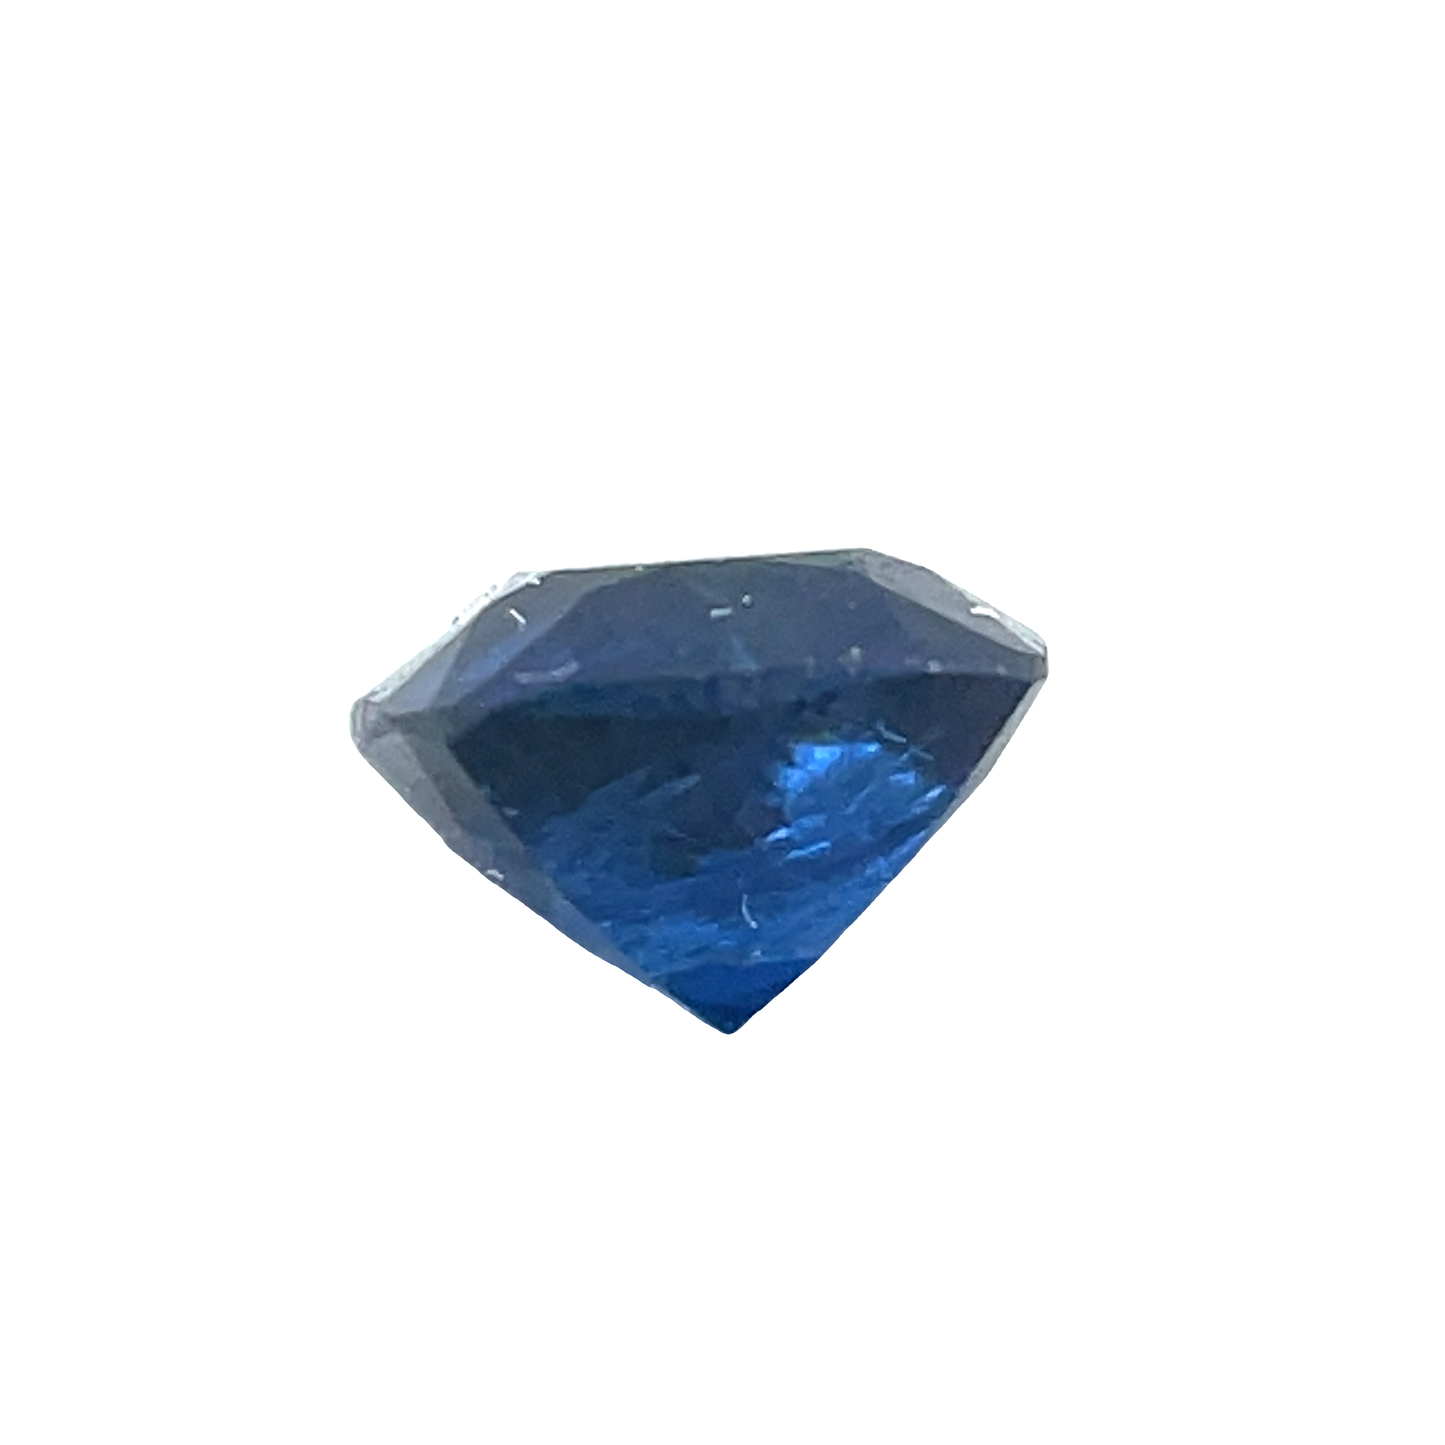 Saphir, Blau, Kissen, 0,52 ct., 4,3x4,3x3,0 mm